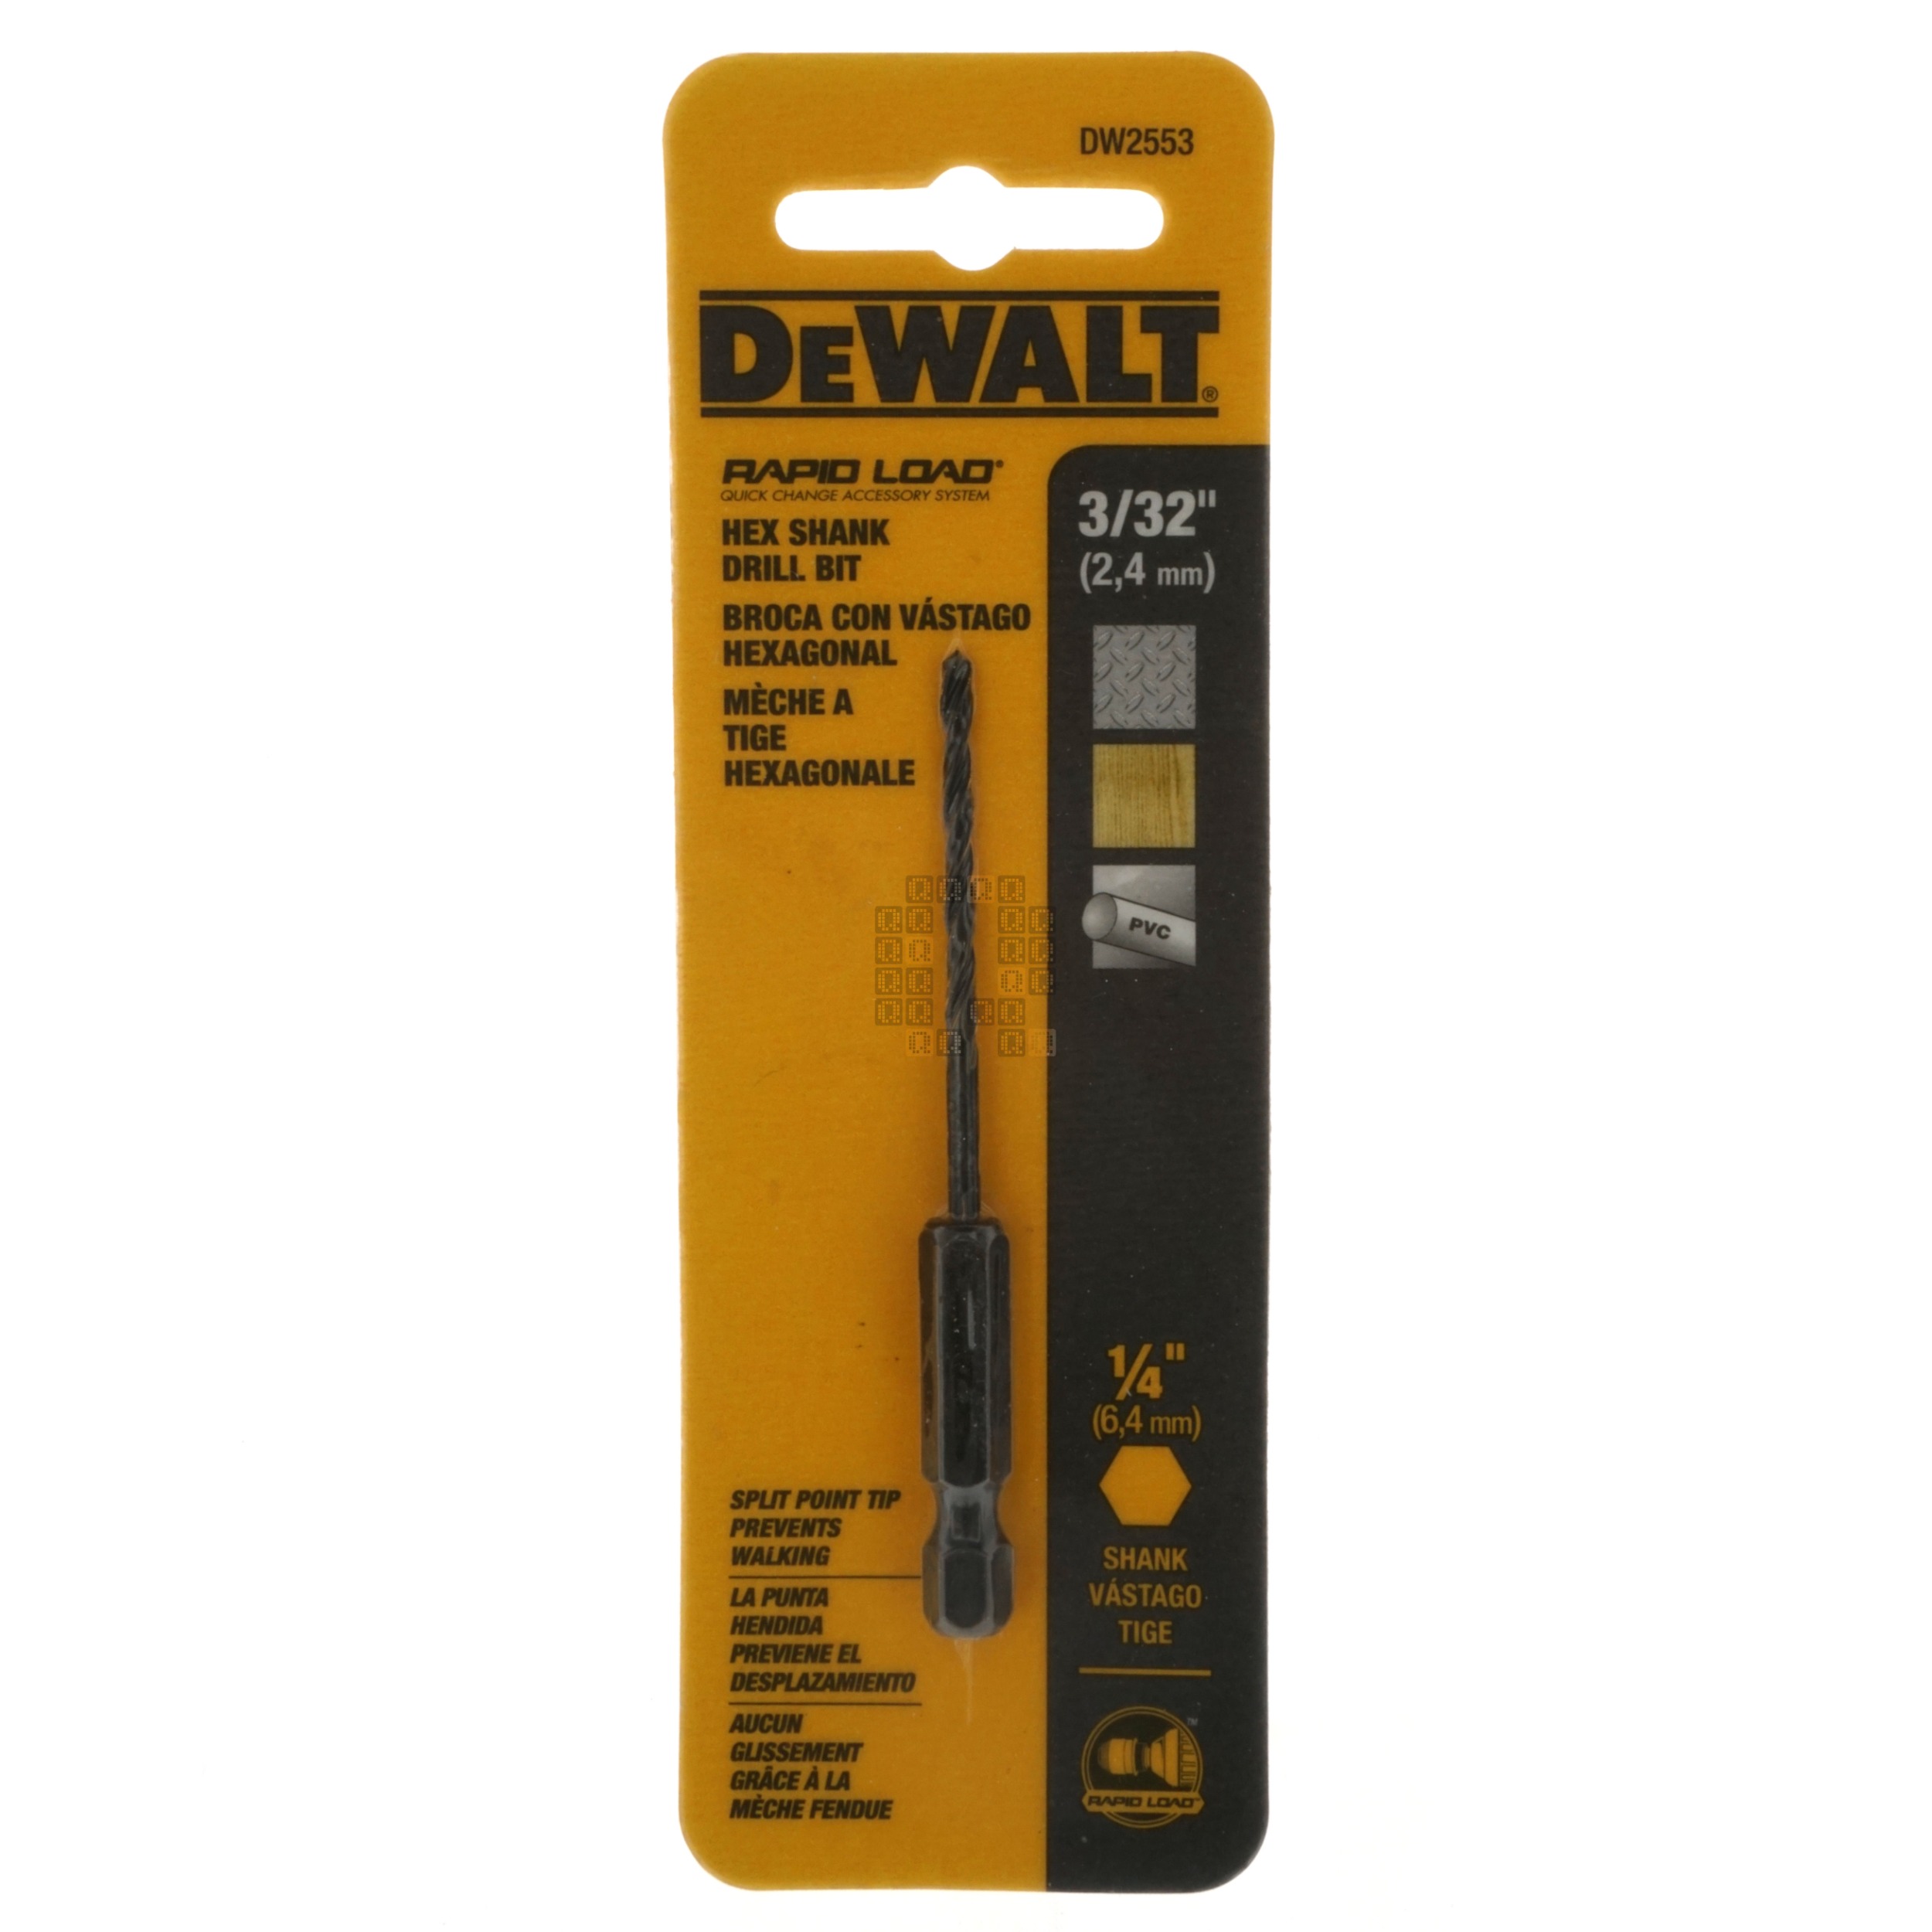 DeWalt DW2553 3/32" (2.4mm) Rapid Load 1/4" Hex Shank Drill Bit, Split Point Tip